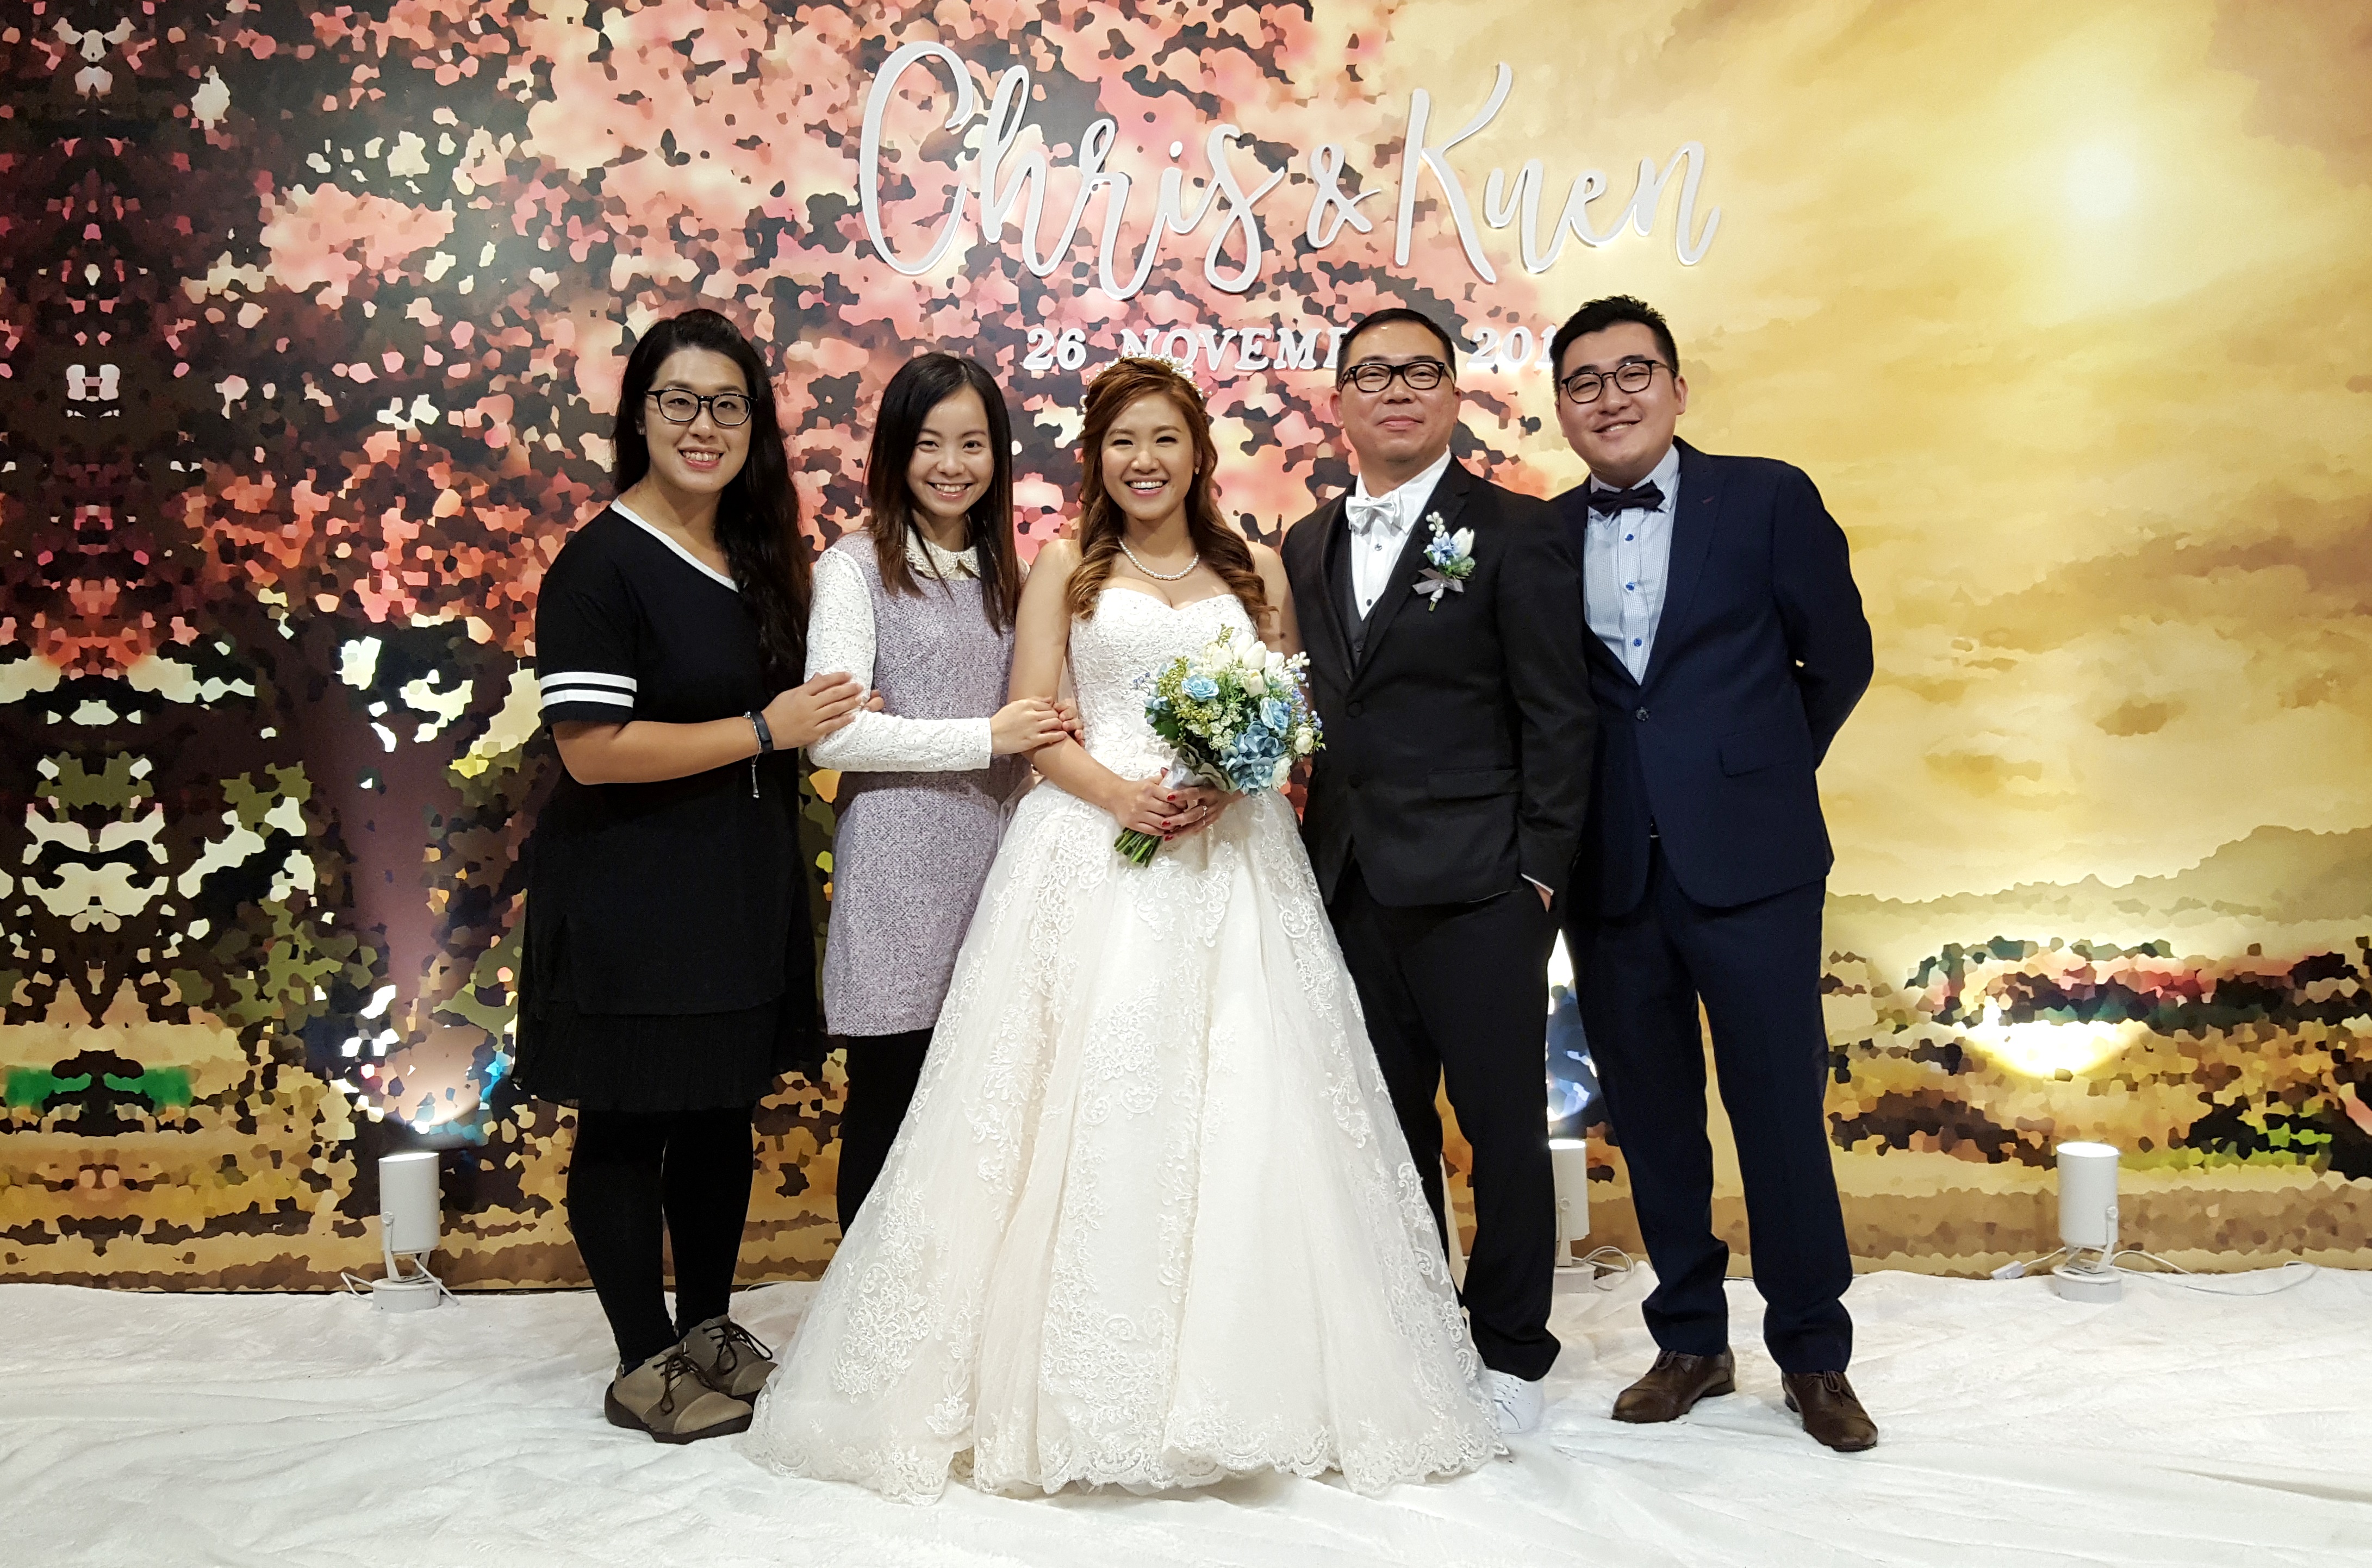 MC Angel Leung司儀工作紀錄: 婚禮統籌及婚禮司儀 @觀塘聘珍樓